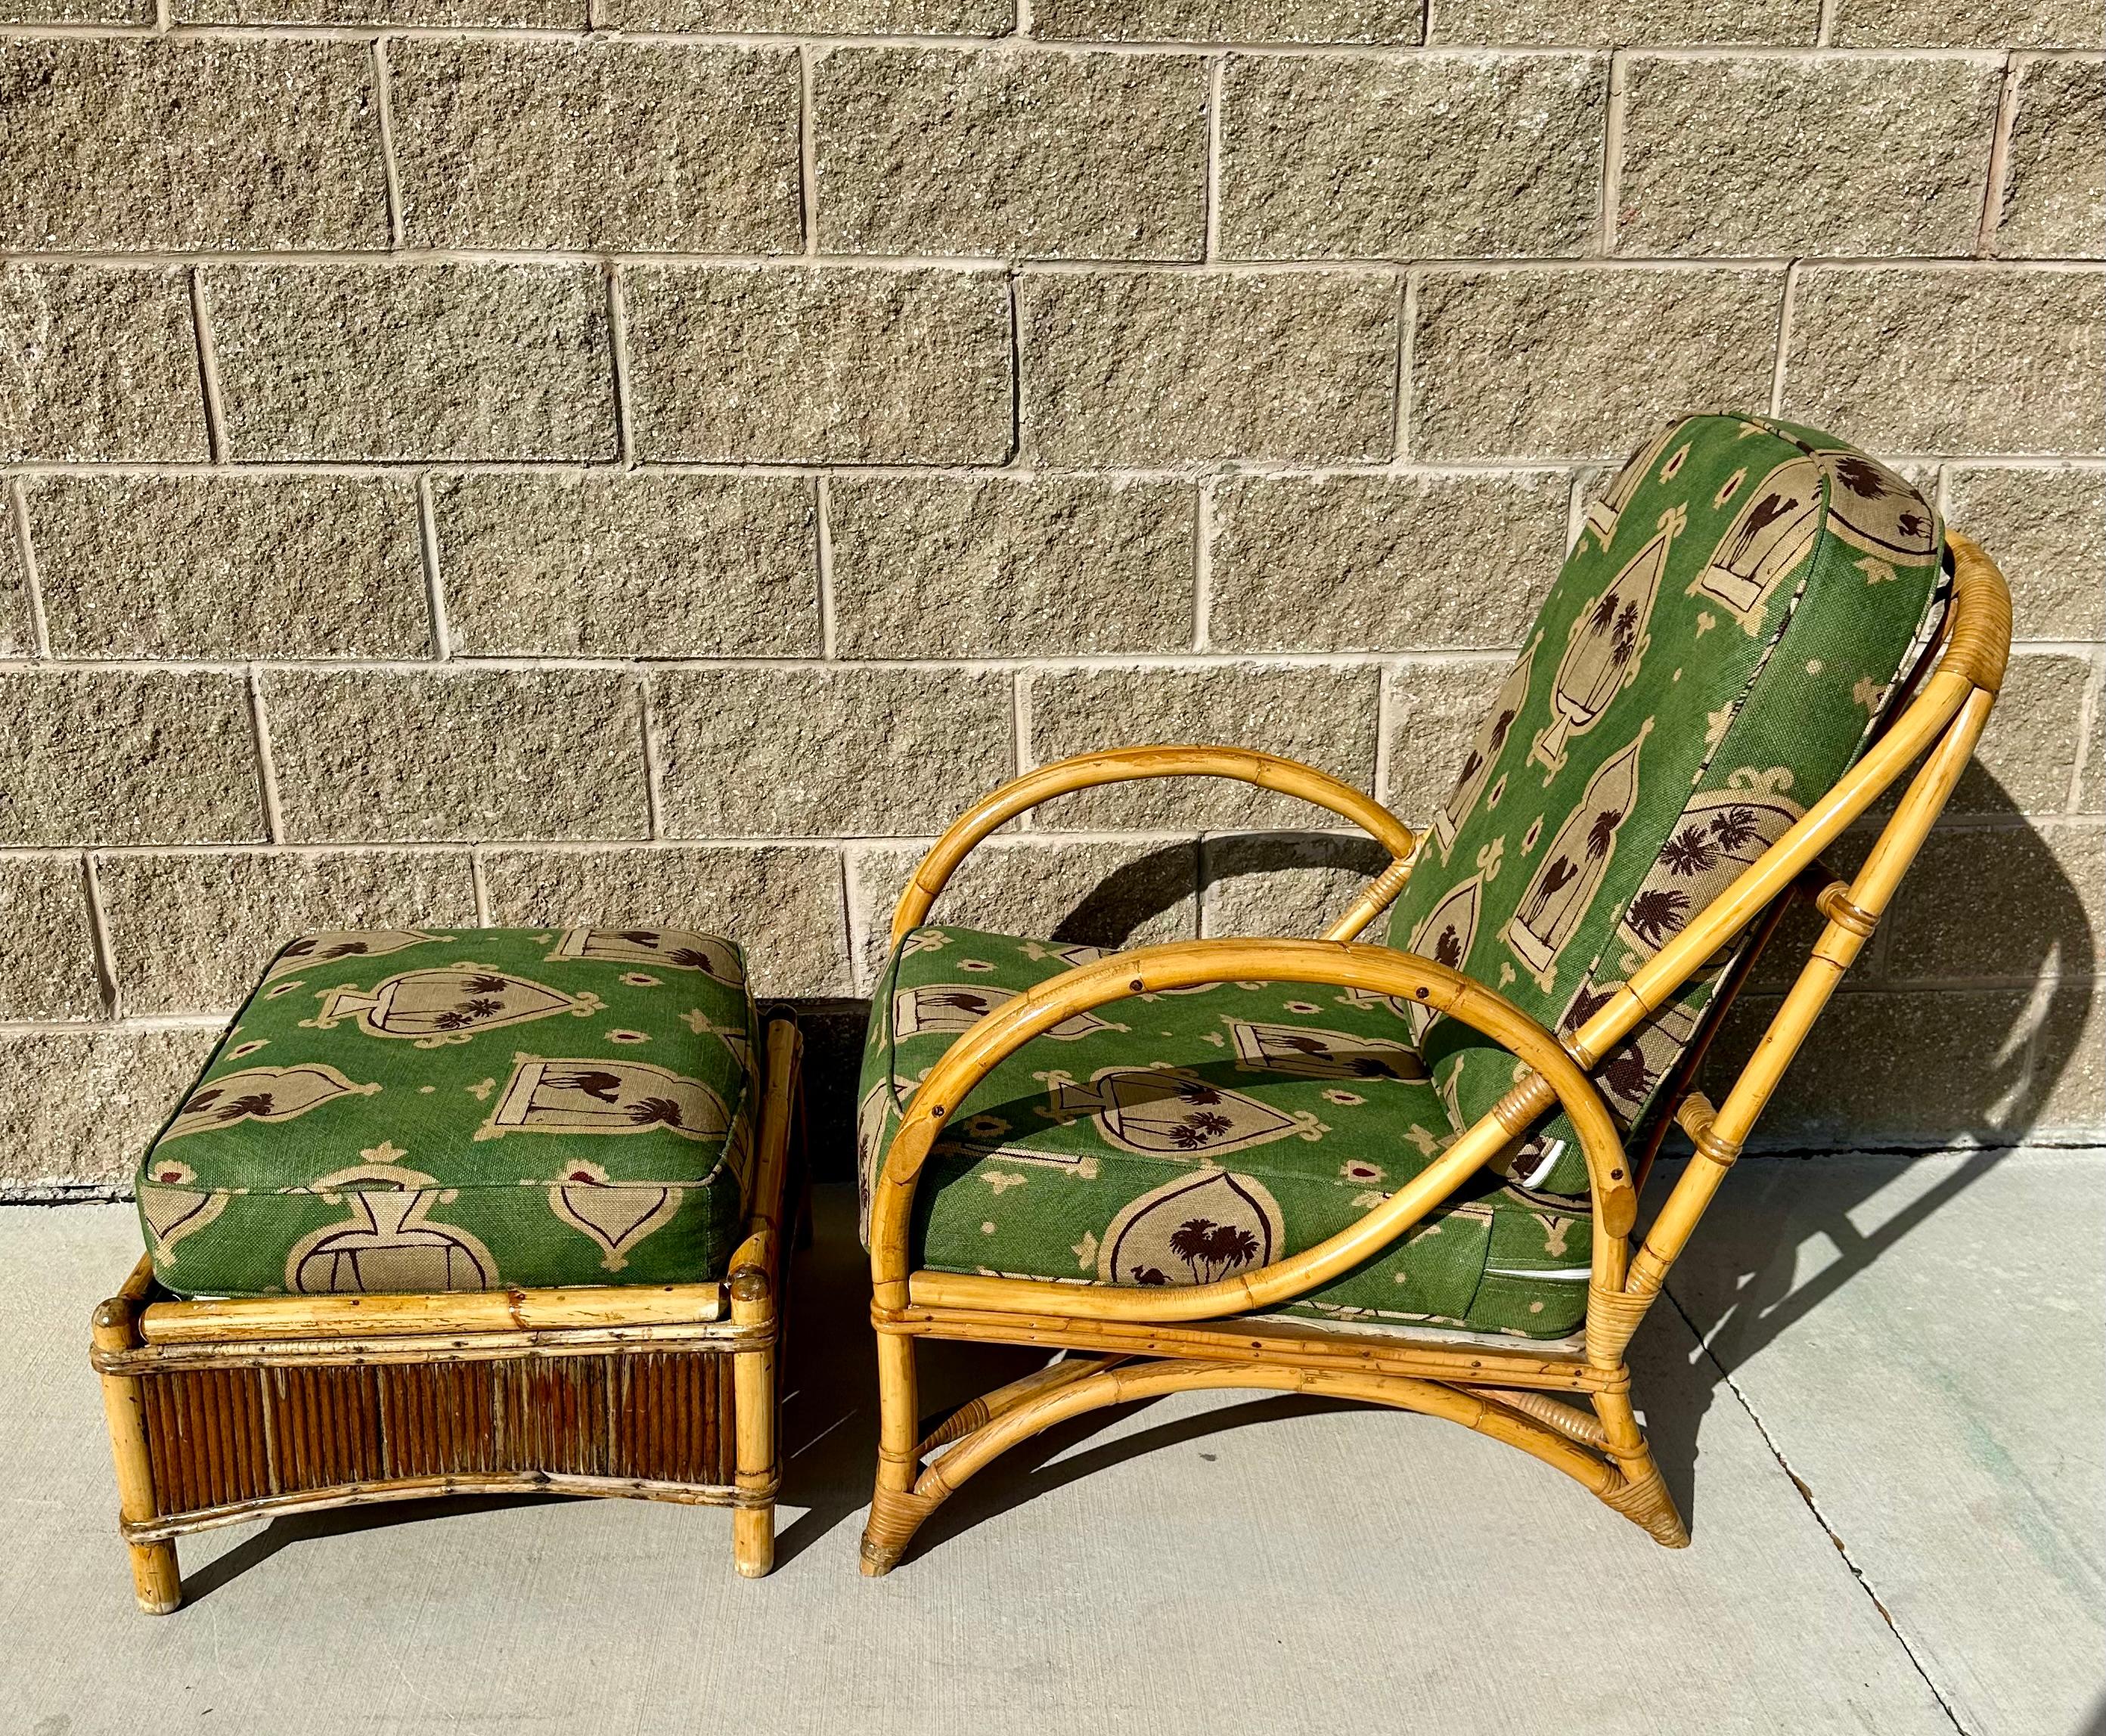 Vintage seltene 1940er Rattan Lounge Stuhl und Ottomane.  Schön neu gepolstert große Qualität Stück in gutem Vintage-Zustand mit einigen Alter Verschleiß an der Rattan. Dieses Sofa würde zu jedem Regency passen,  Mid Century Modern oder eklektisches